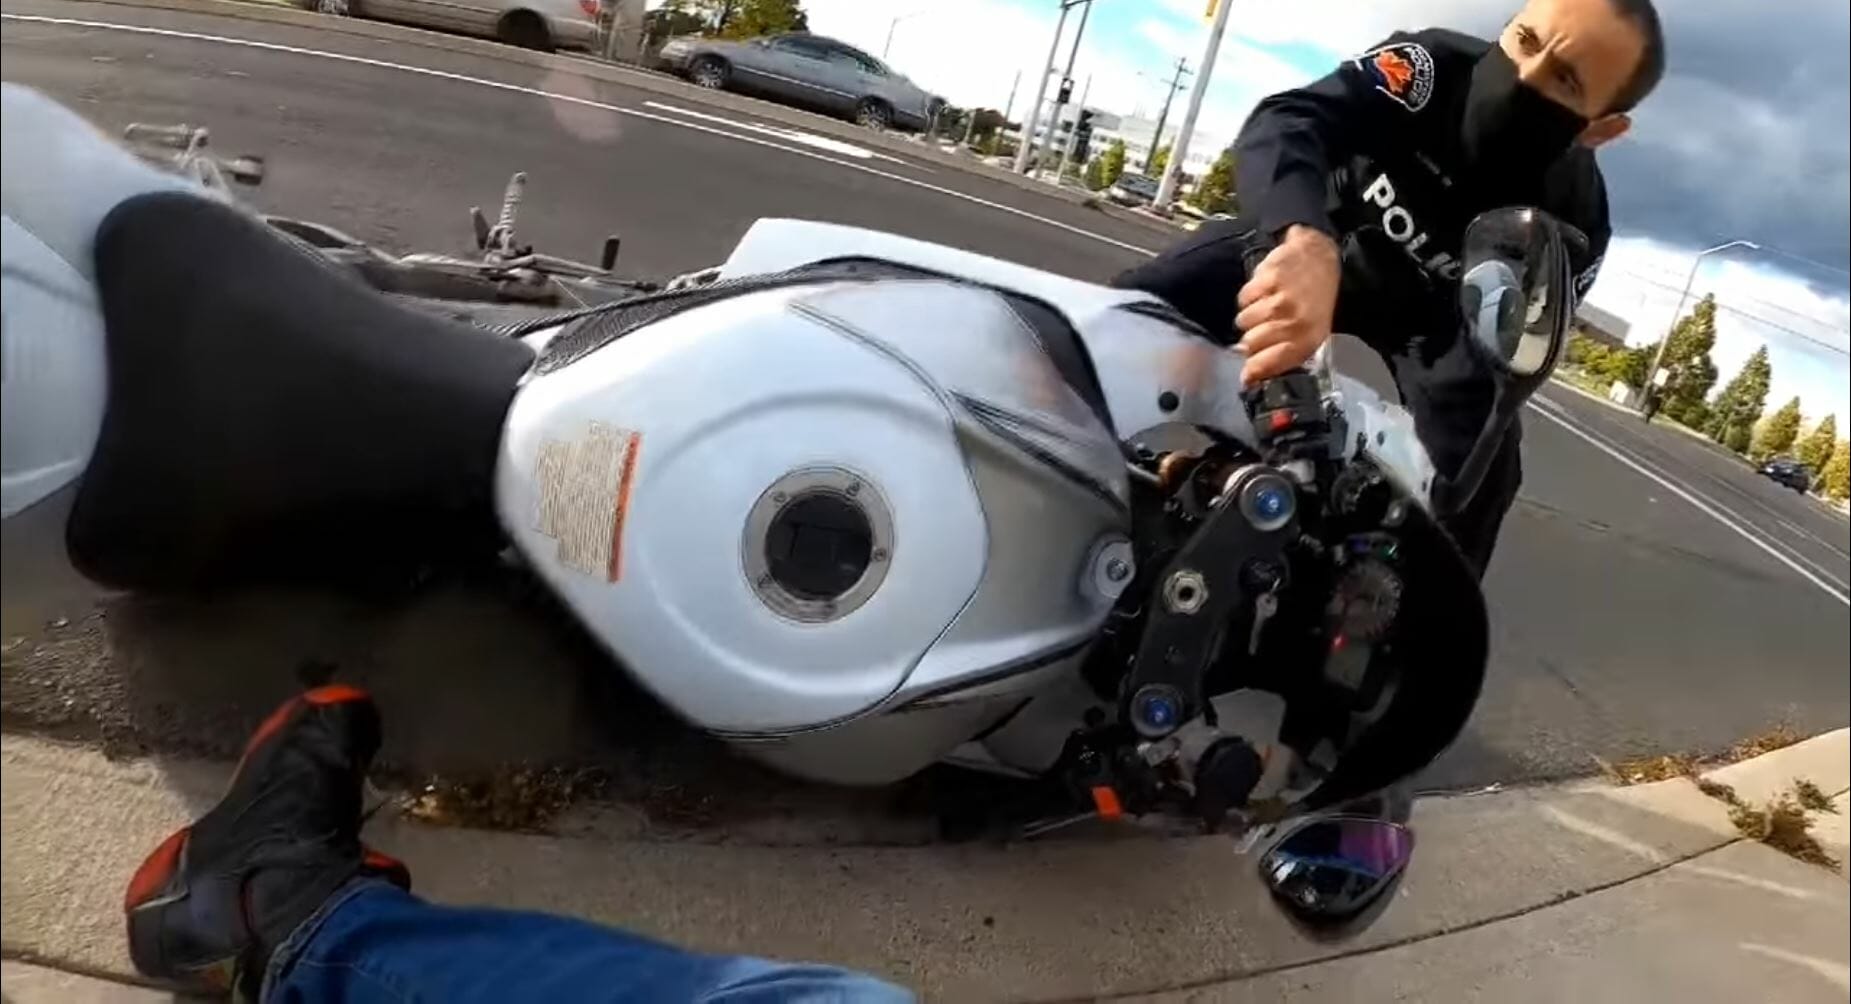 Kanadischer Polizist reißt Fahrer vom Motorrad
- auch in der MOTORRAD NACHRICHTEN APP